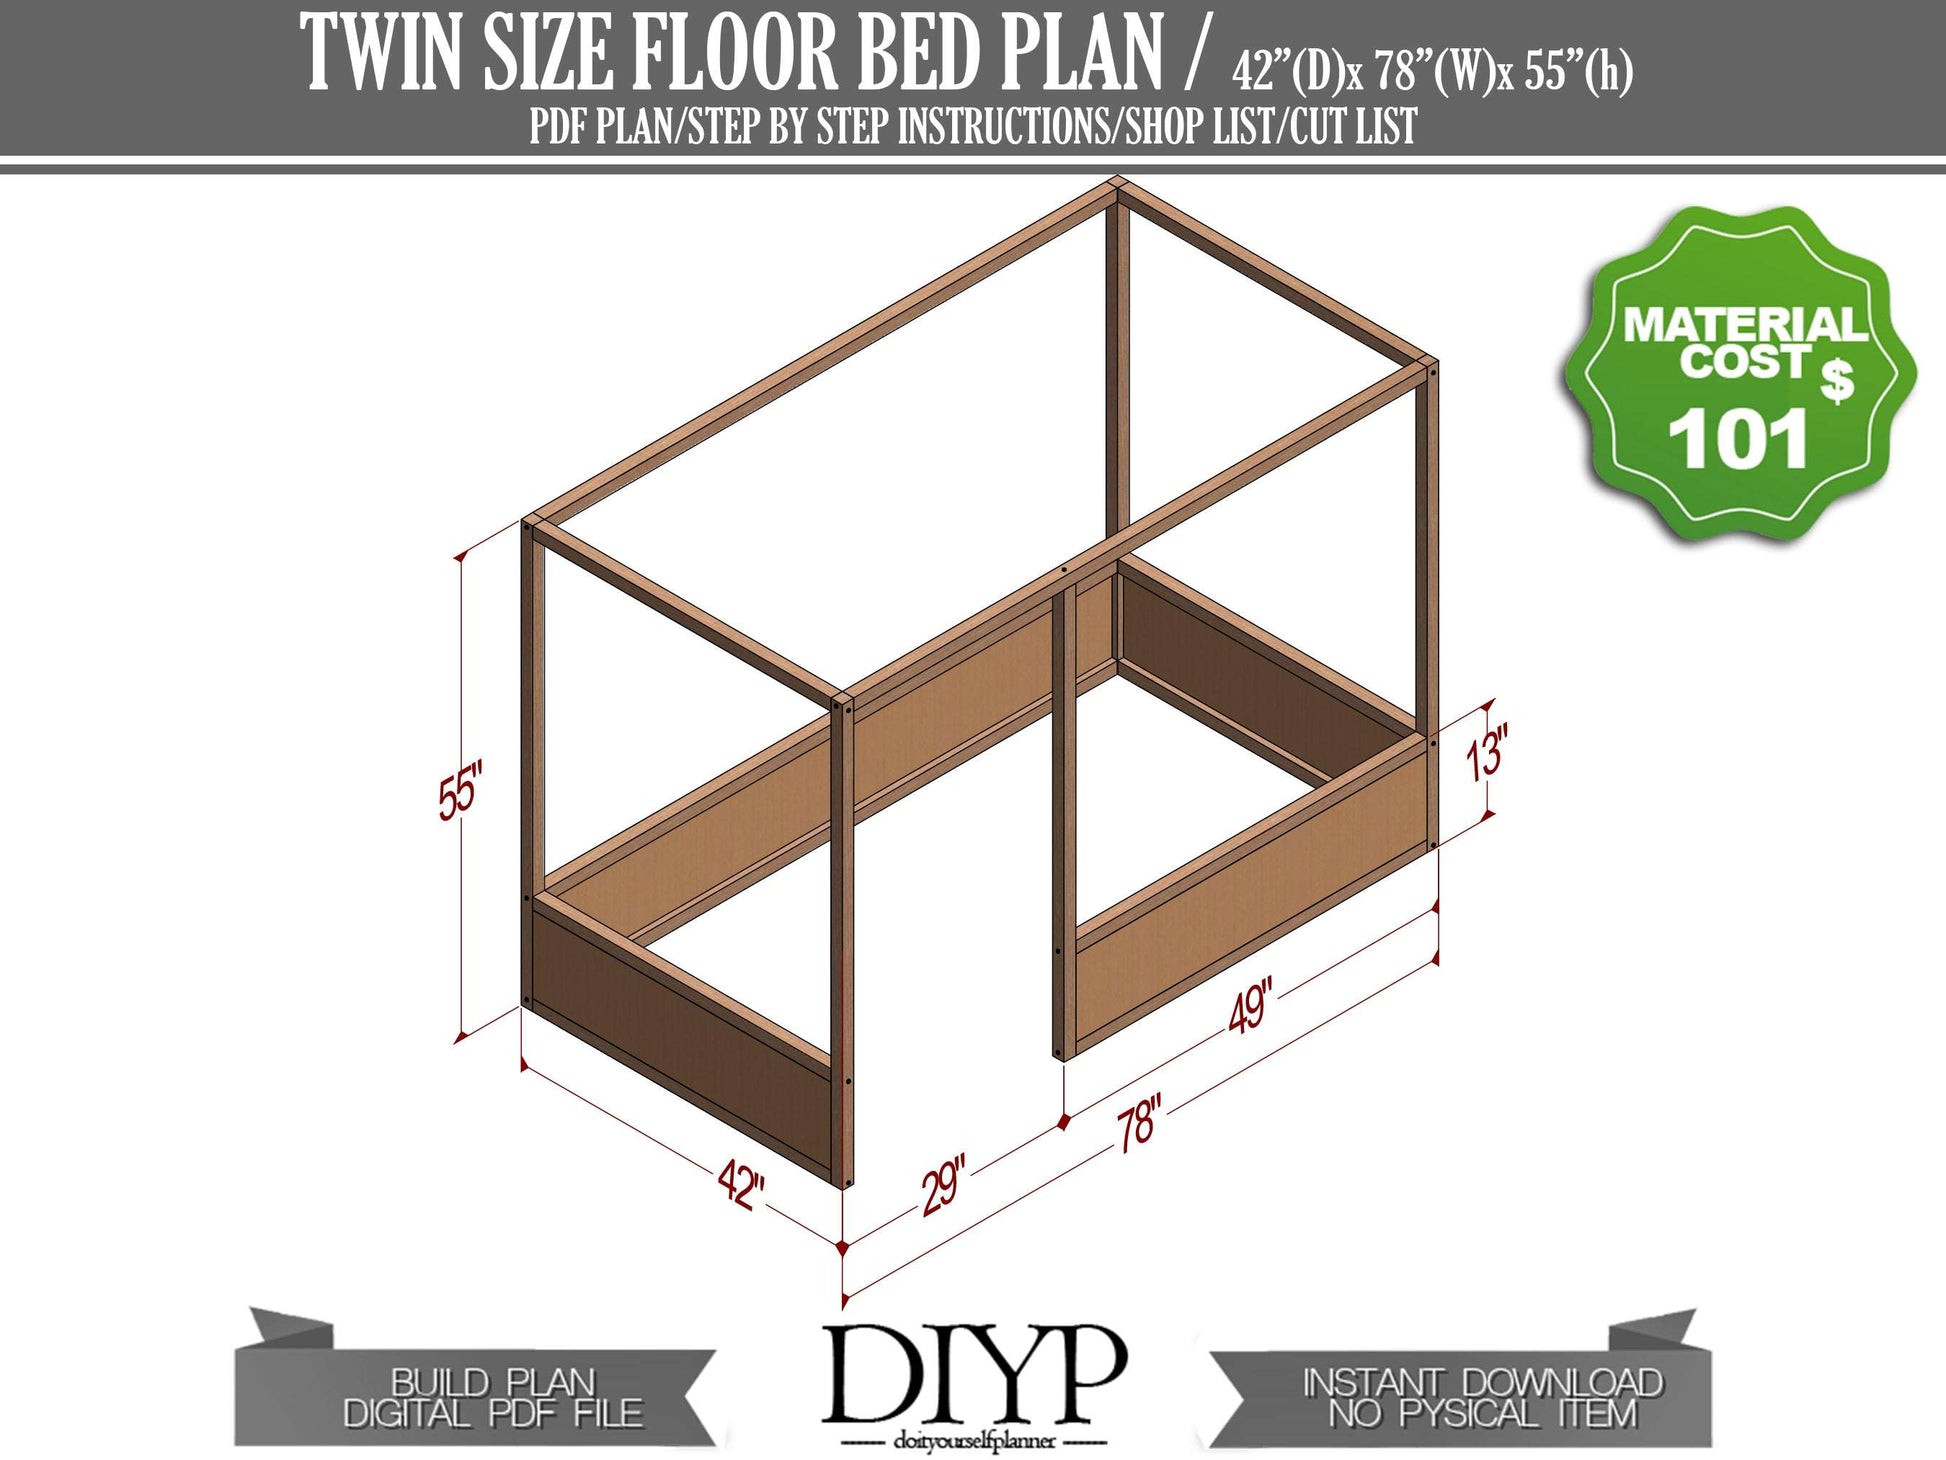 DIY Twin size Floor Bed plan, build plans for floor bed